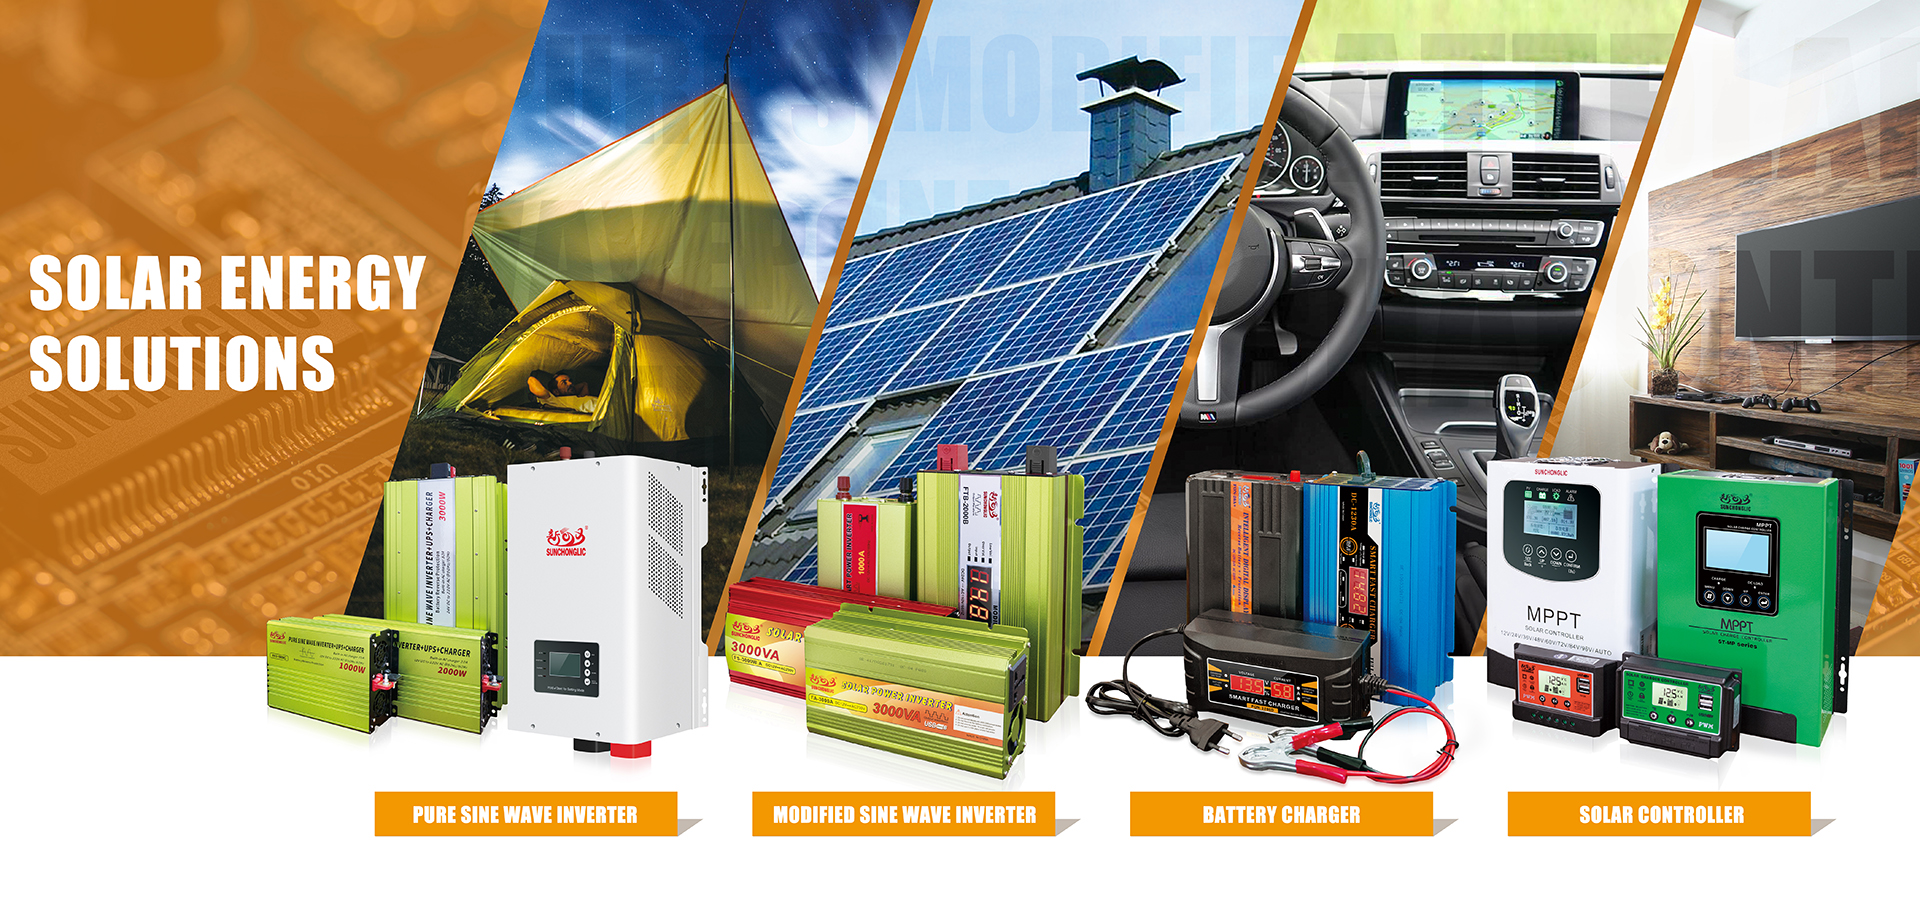 Solar Energy Solution-Solar Power Inverter/Battery Charger/Solar Controller